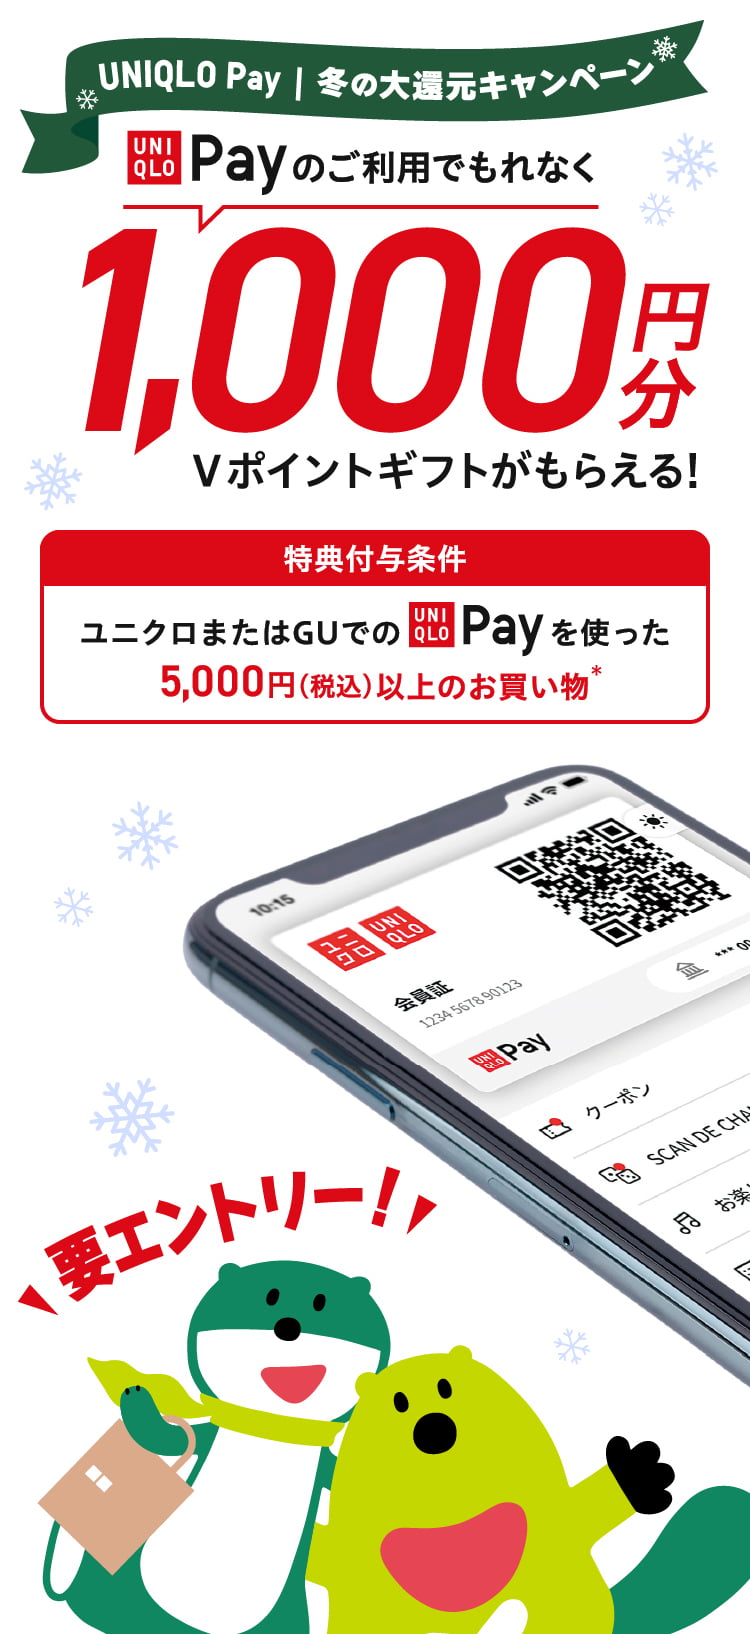 UNIQLO Pay 冬の大還元キャンペーン UNIQLO Payのご利用でもれなく1,000円分のVポイントギフトがもらえる！ 特典付与条件 ユニクロまたはGUでのUNIQLO Payを使った5,000円（税込）以上のお買い物